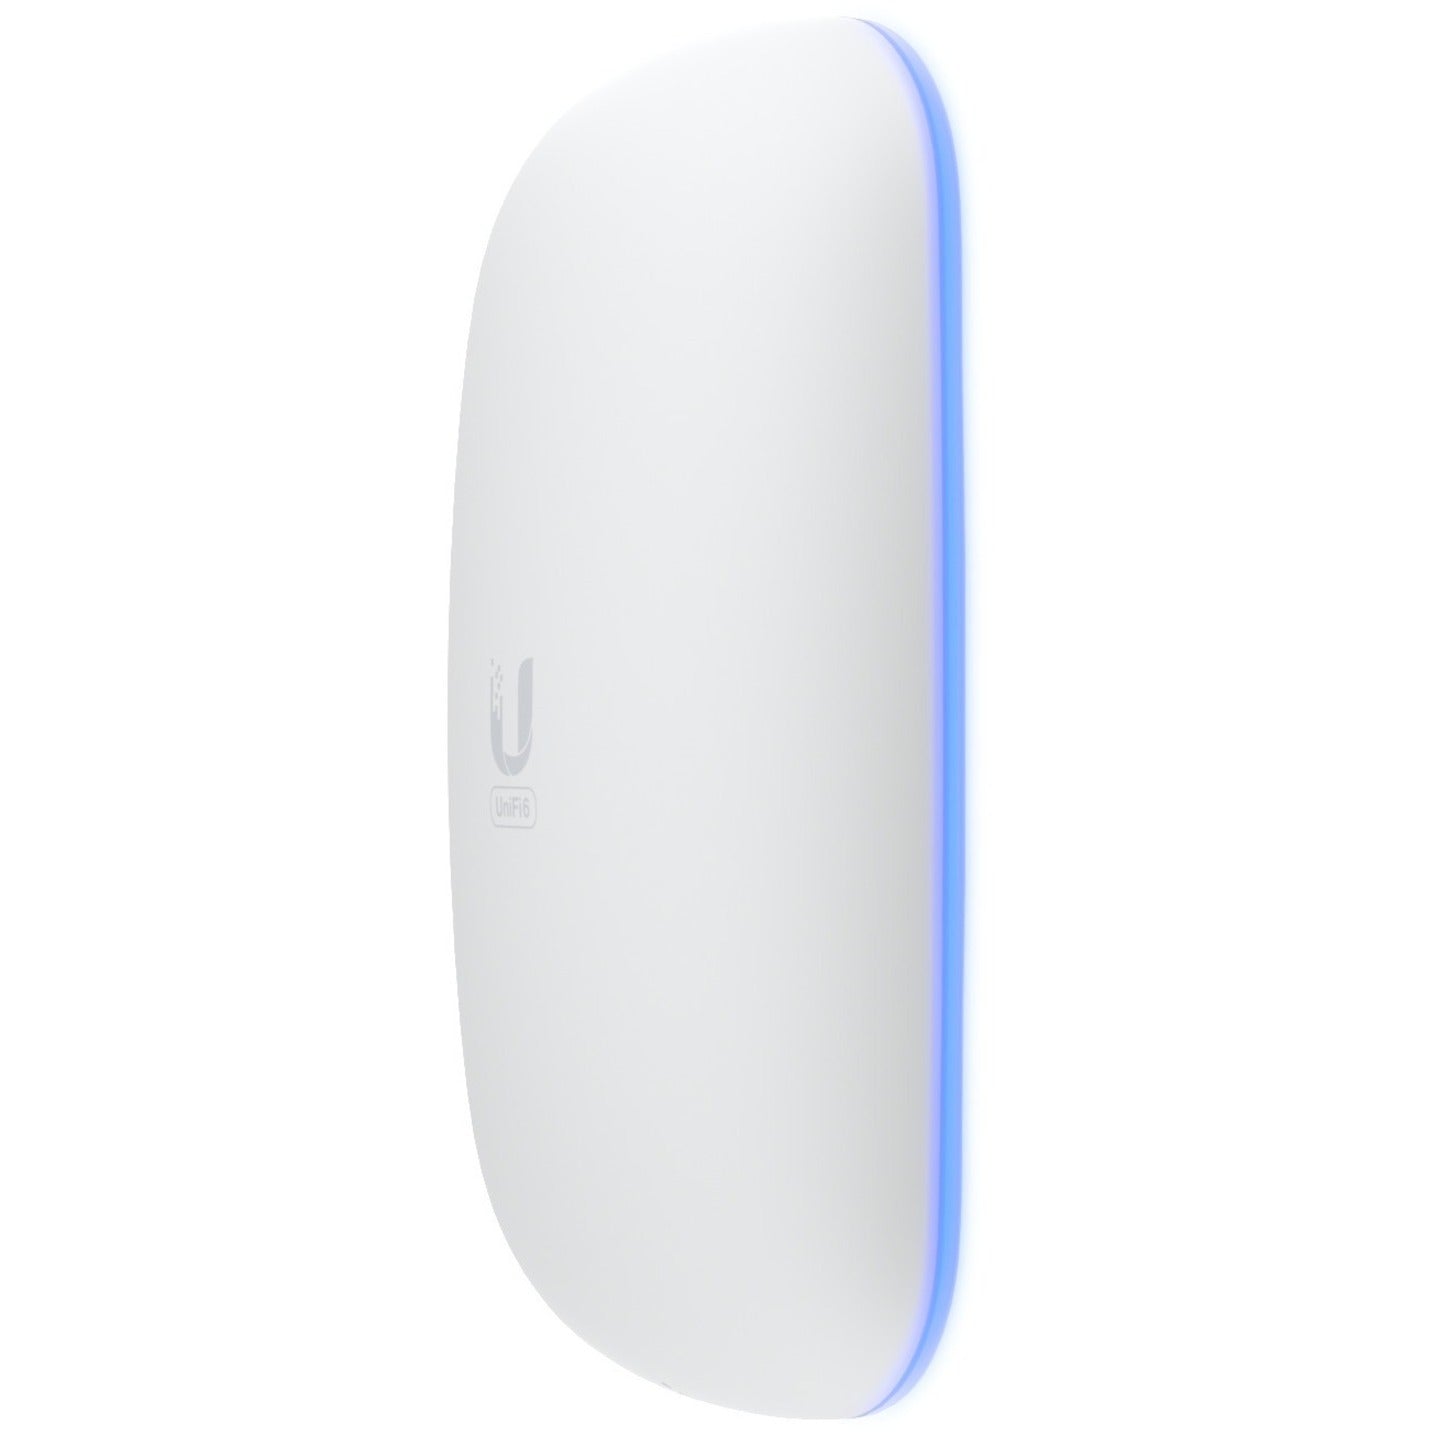 Ubiquiti U6-EXTENDER-US UniFi6 Extender Dual Band Wireless Access Point, 5.30 Gbit/s